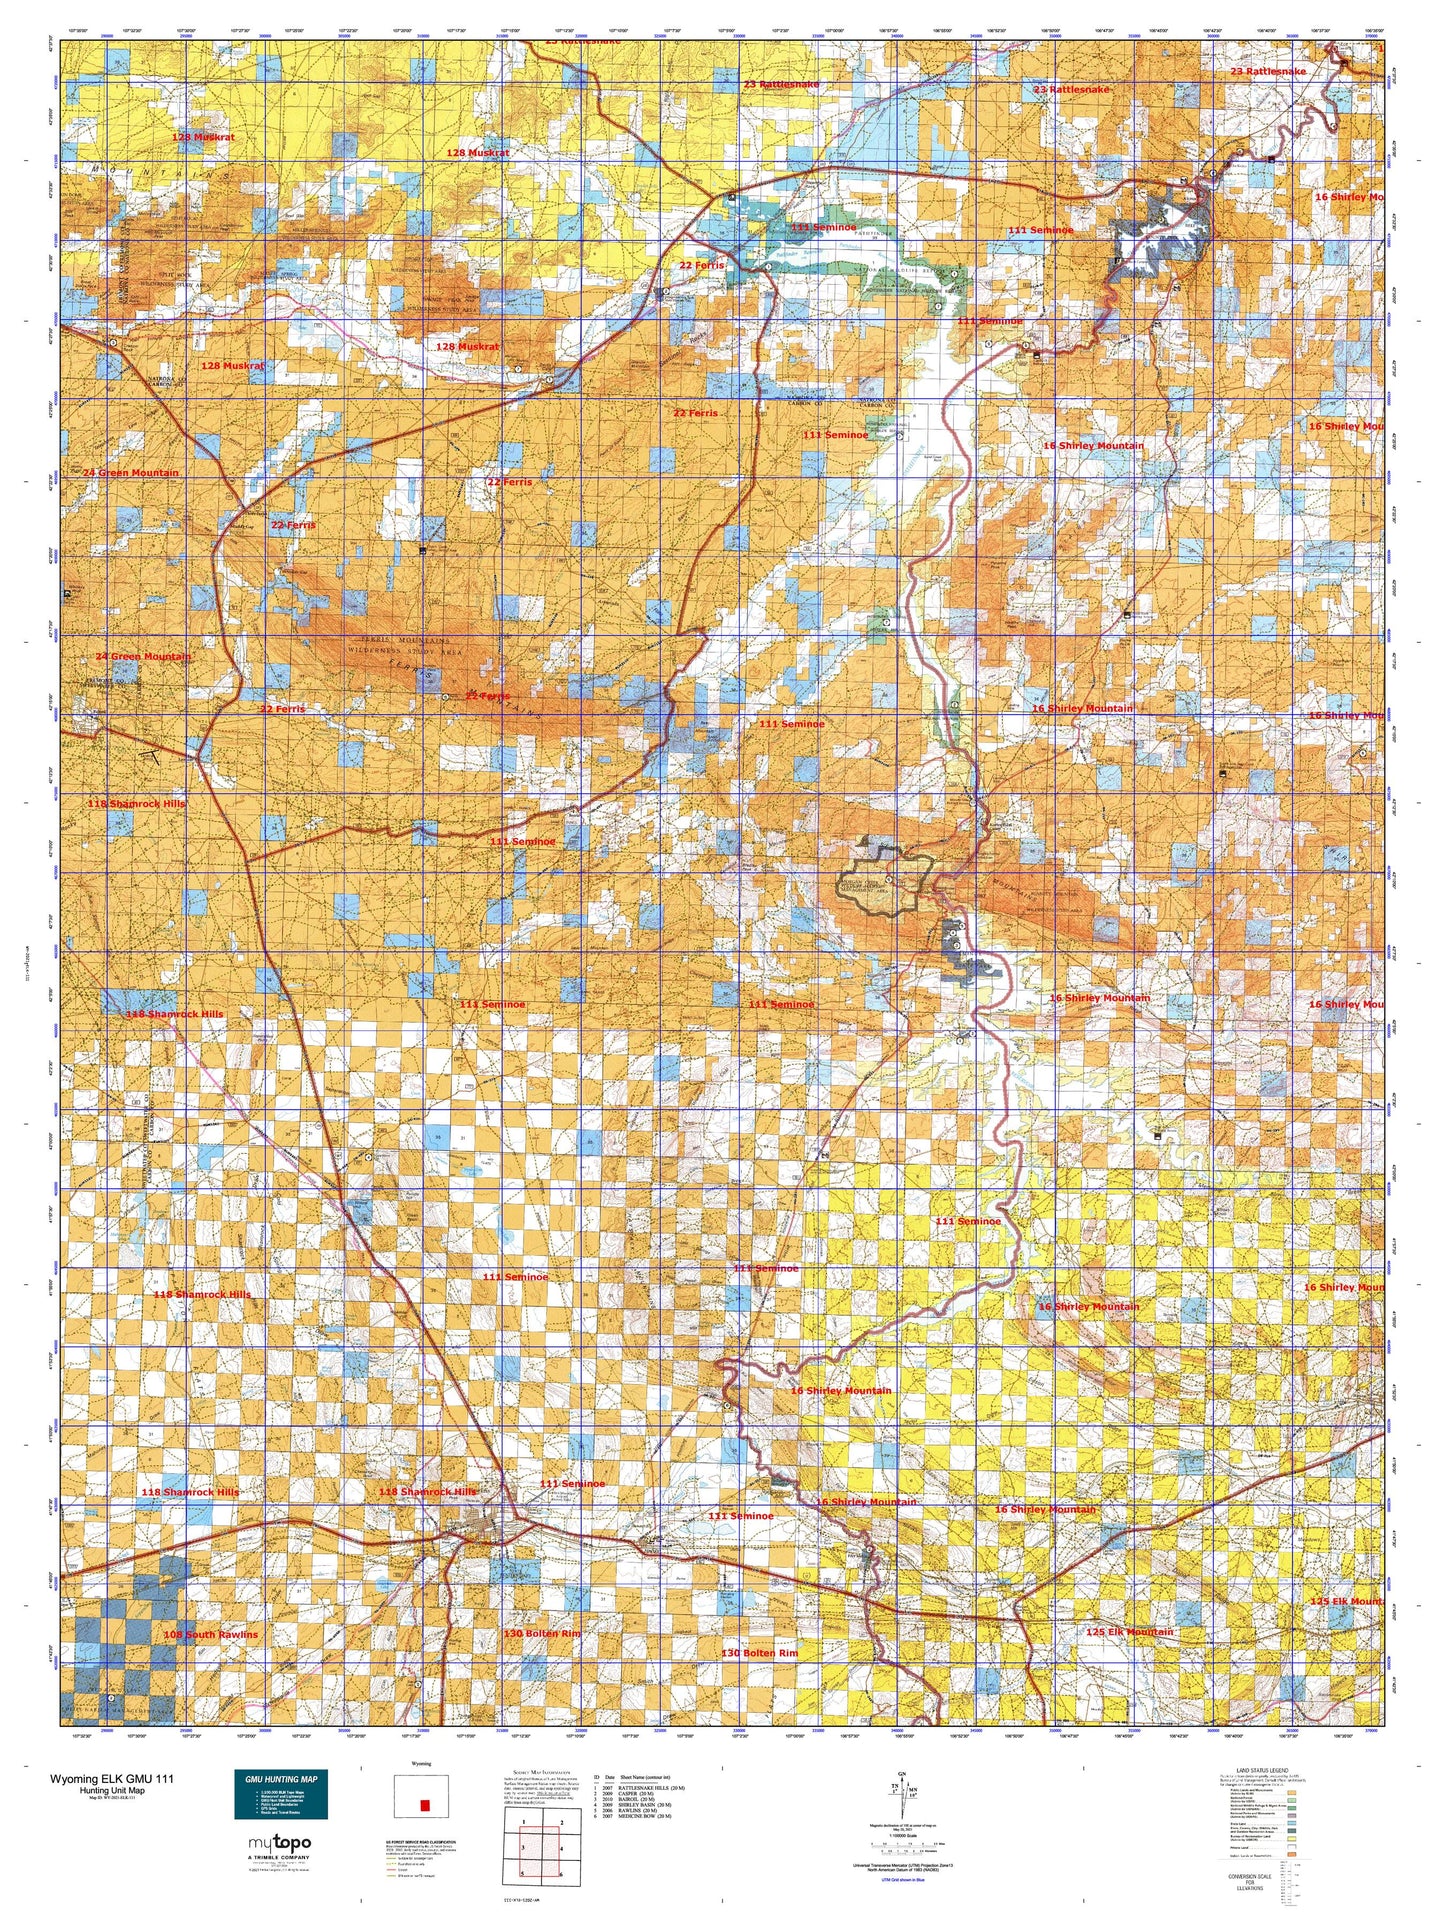 Wyoming Elk GMU 111 Map Image